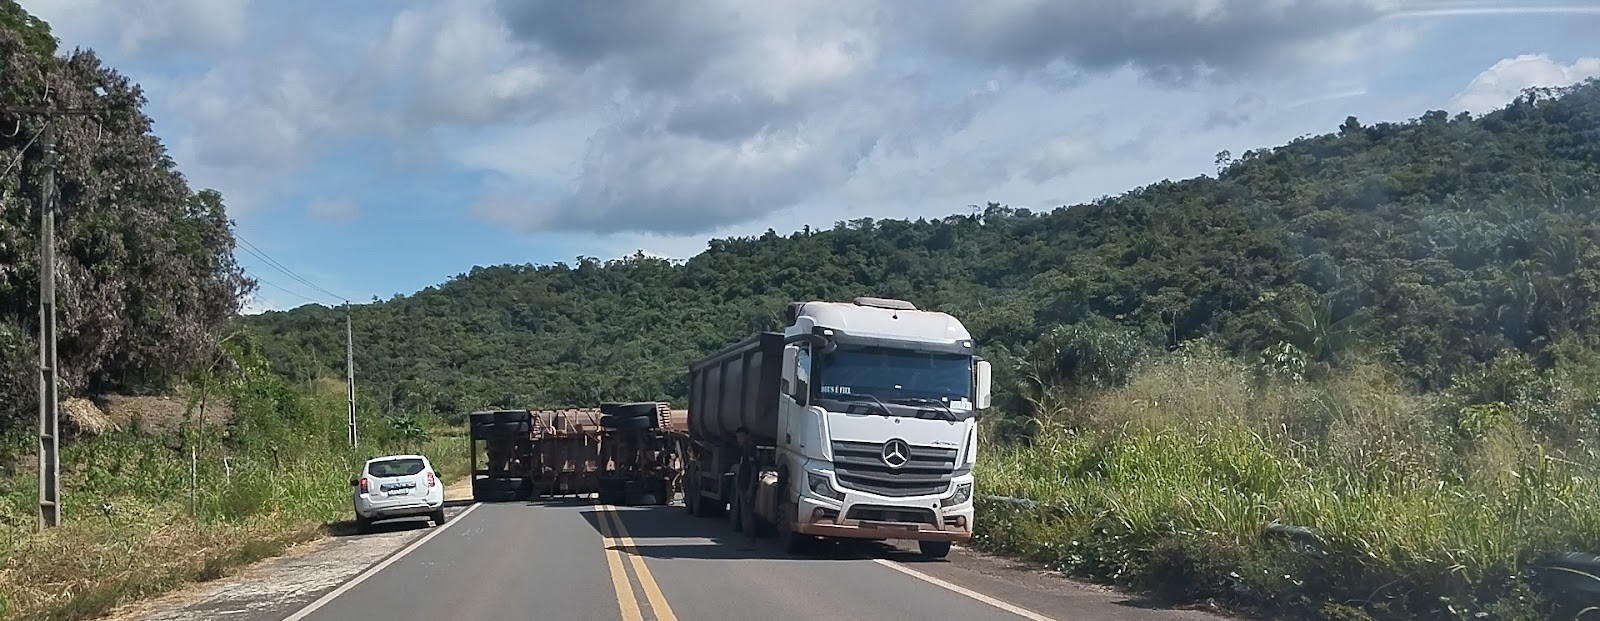 Dois caminhões carregados de soja tombam na BR-222, no Maranhão